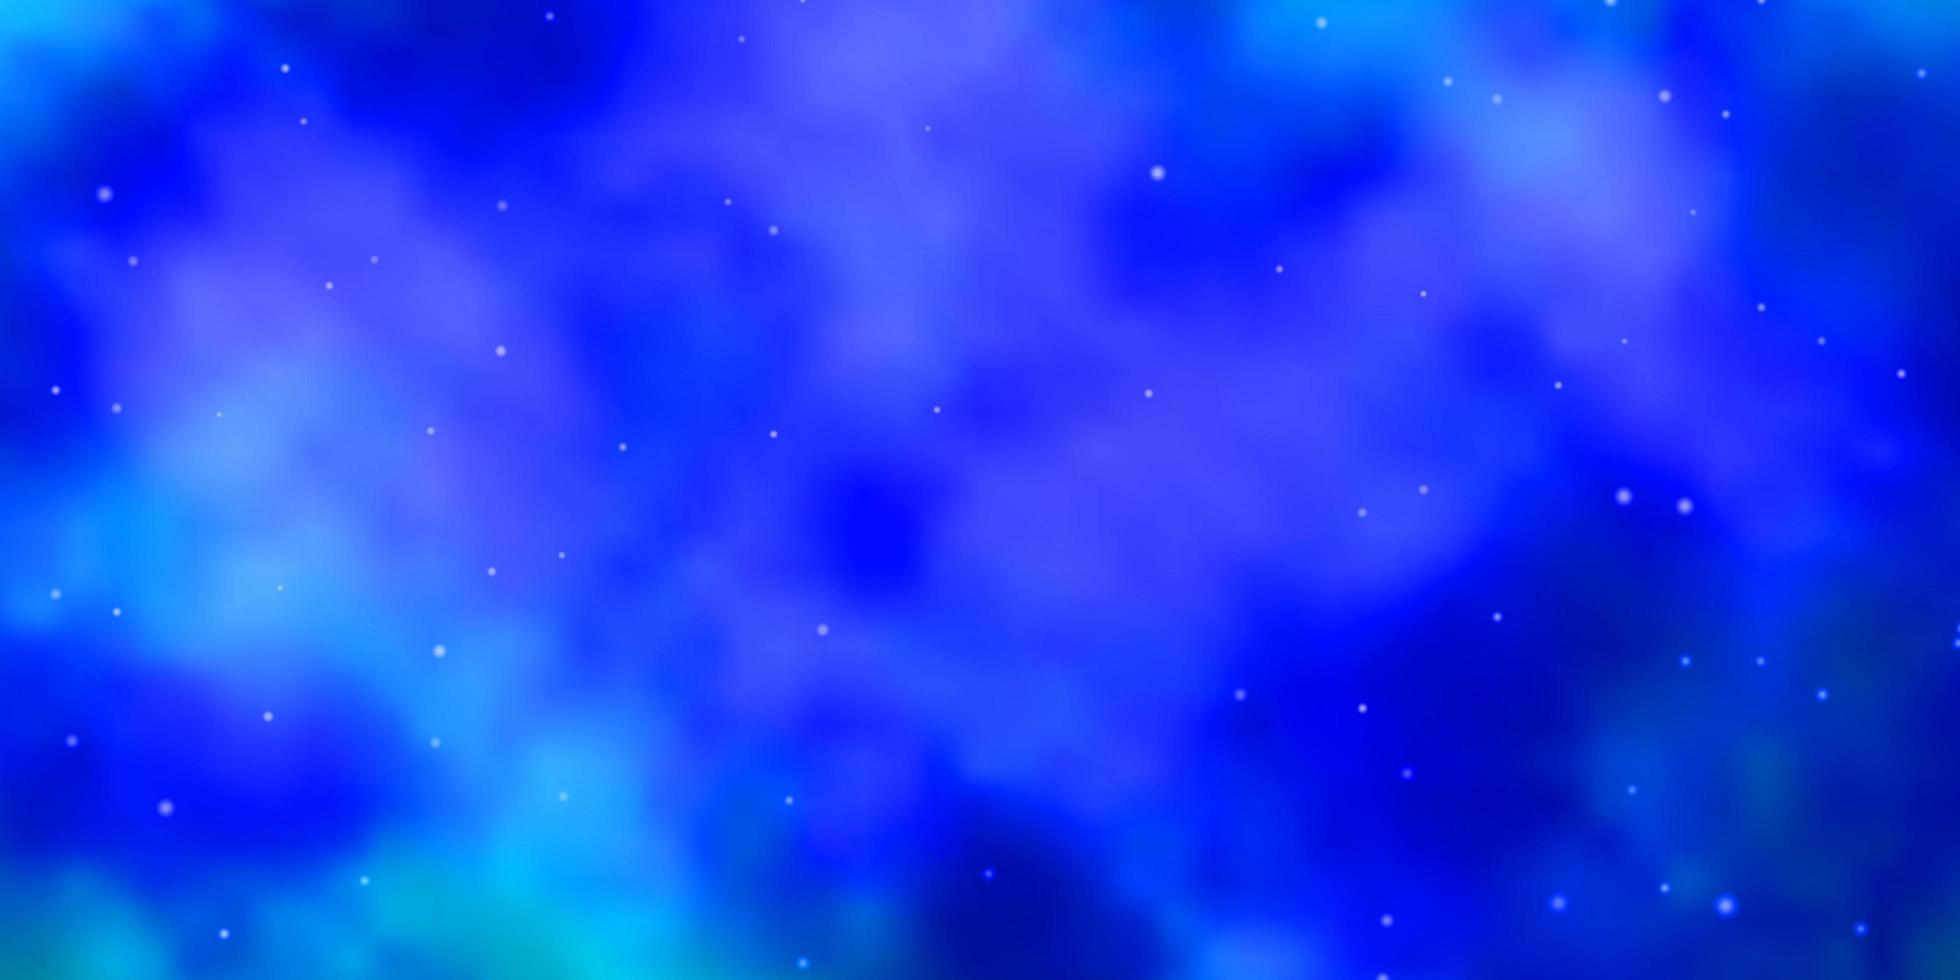 modello vettoriale azzurro con stelle al neon. illustrazione astratta geometrica moderna con le stelle. tema per telefoni cellulari.